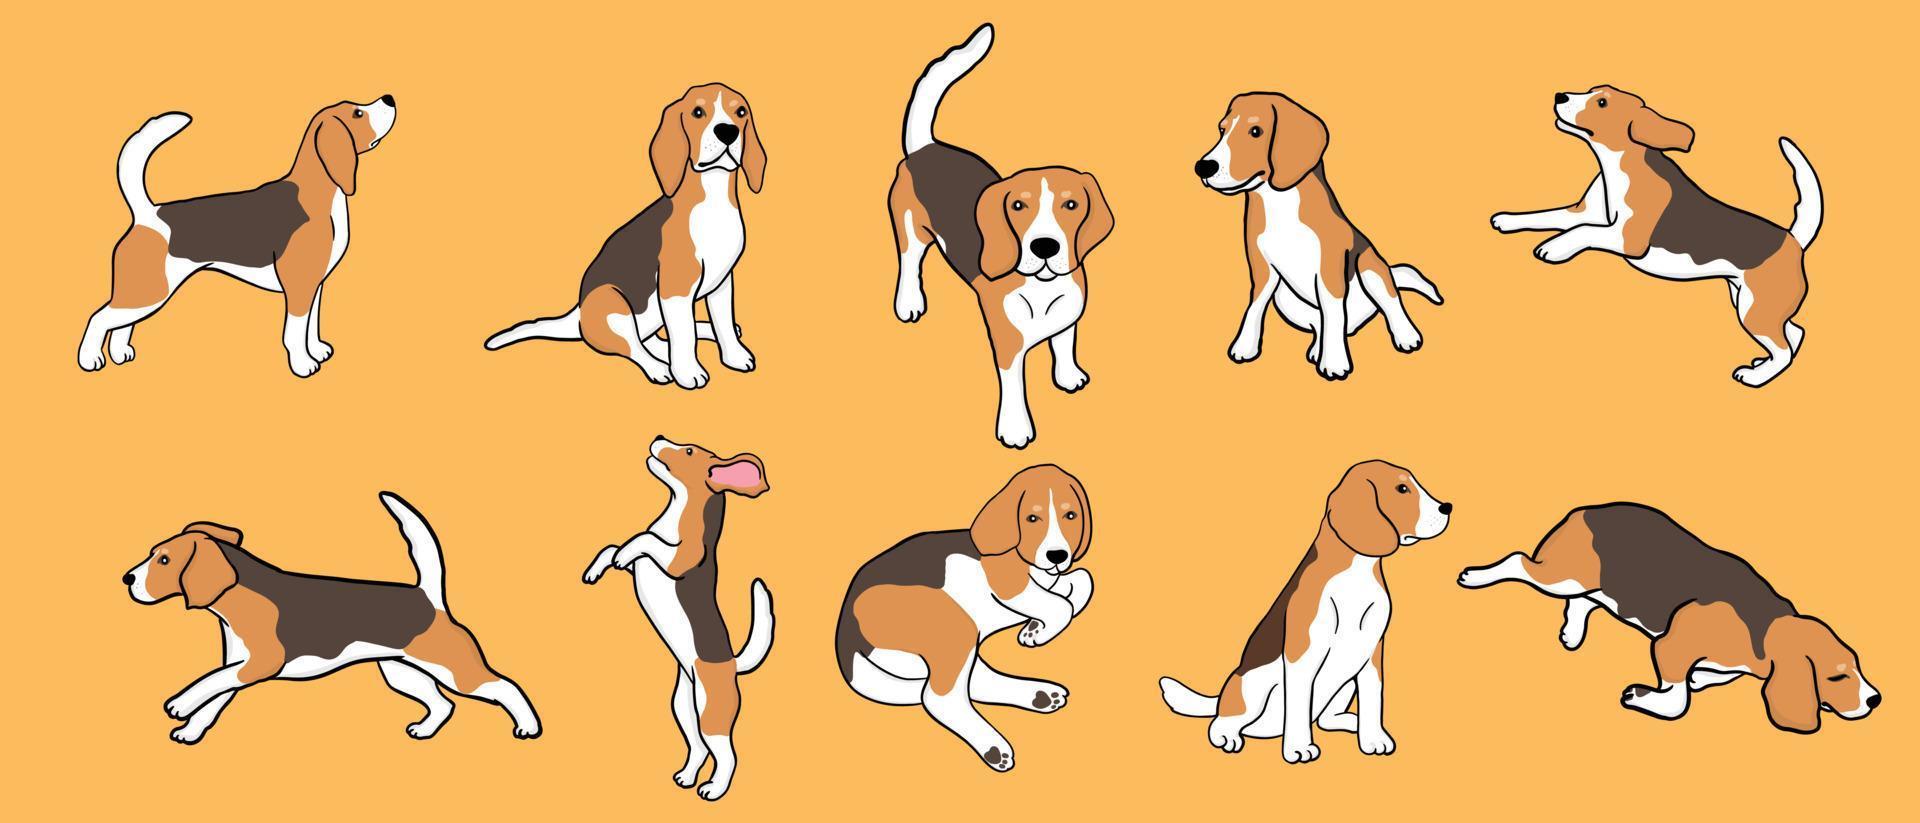 set di cane beagle in diverse pose. piccolo cane da caccia con mantello bianco-marrone e orecchie lunghe. cucciolo con muso carino su sfondo giallo vettore